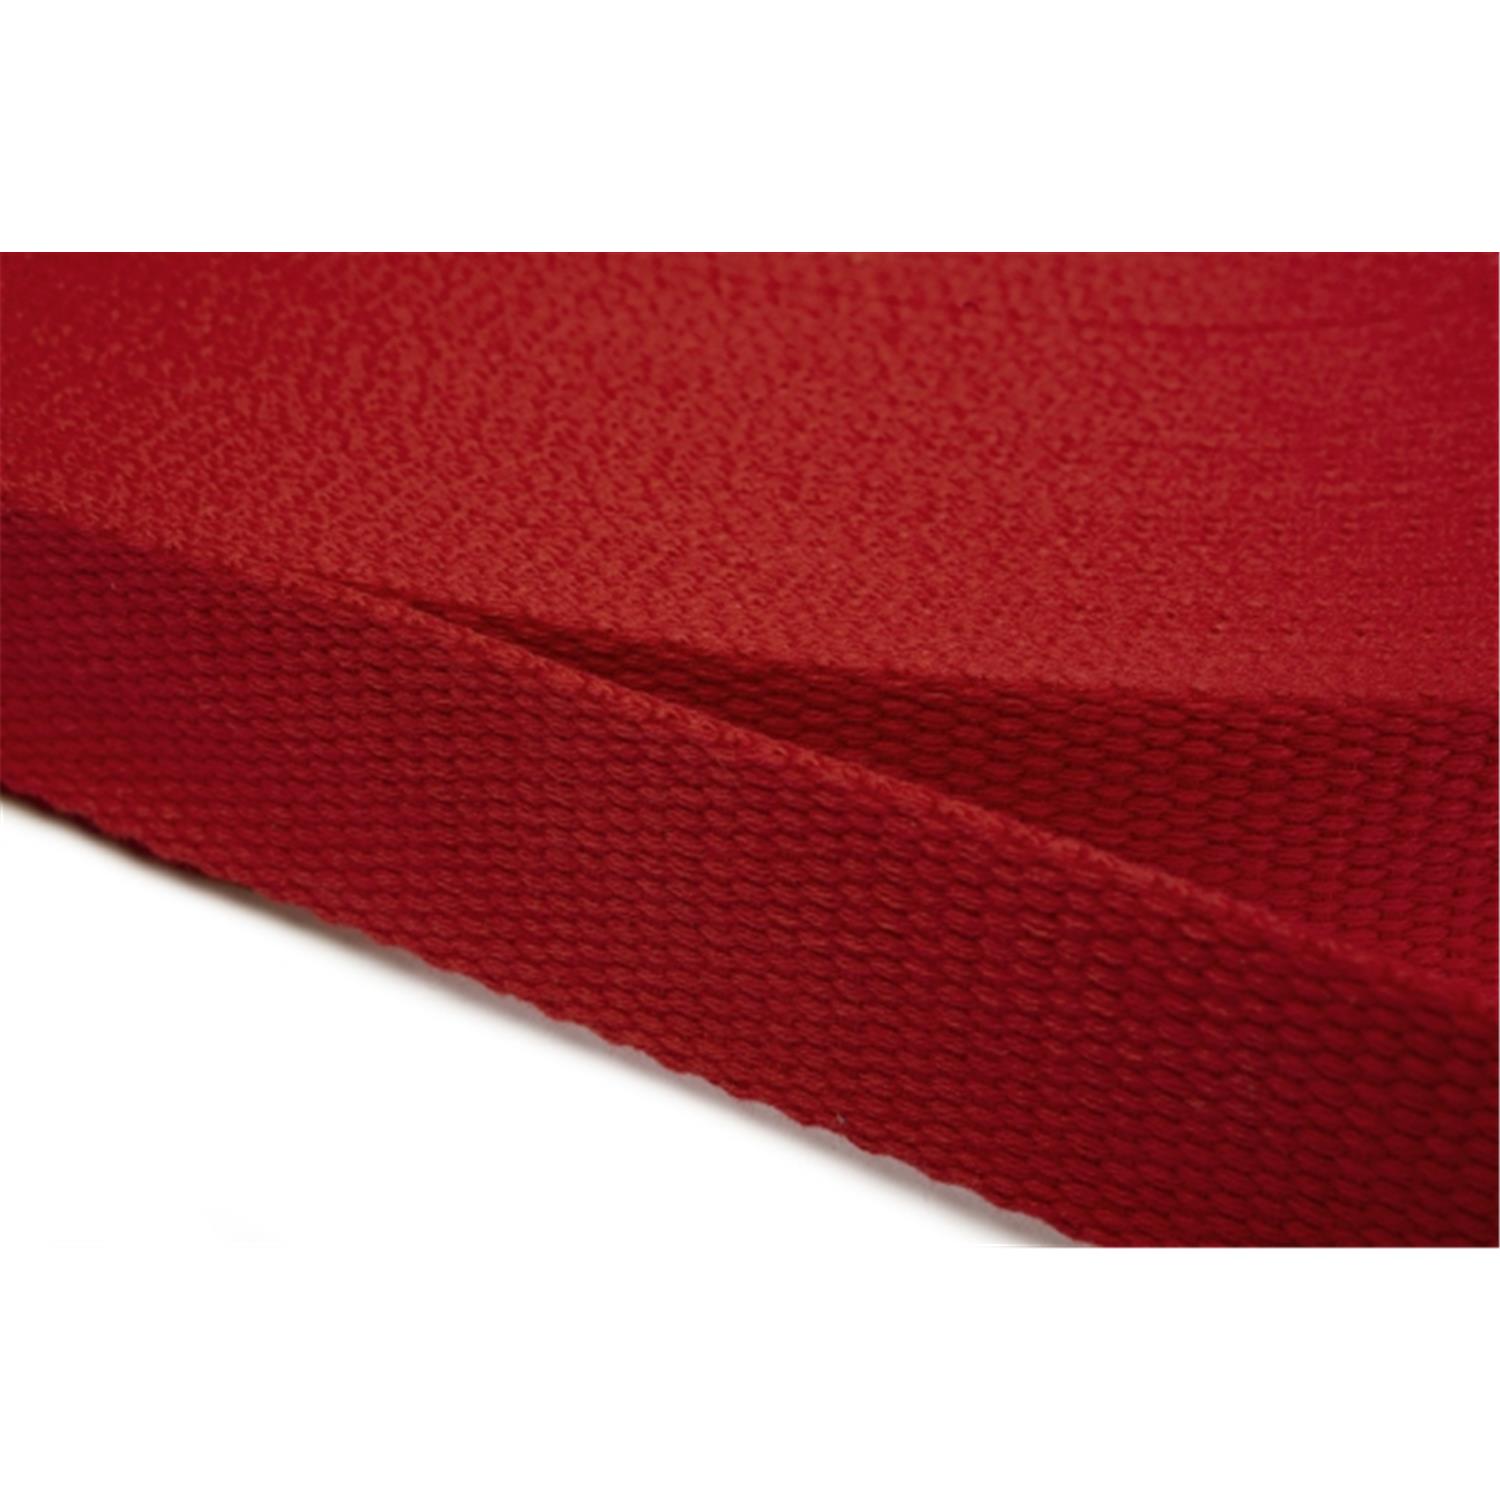 Gurtband aus Baumwolle 15mm in 20 Farben 10 - rot 6 Meter